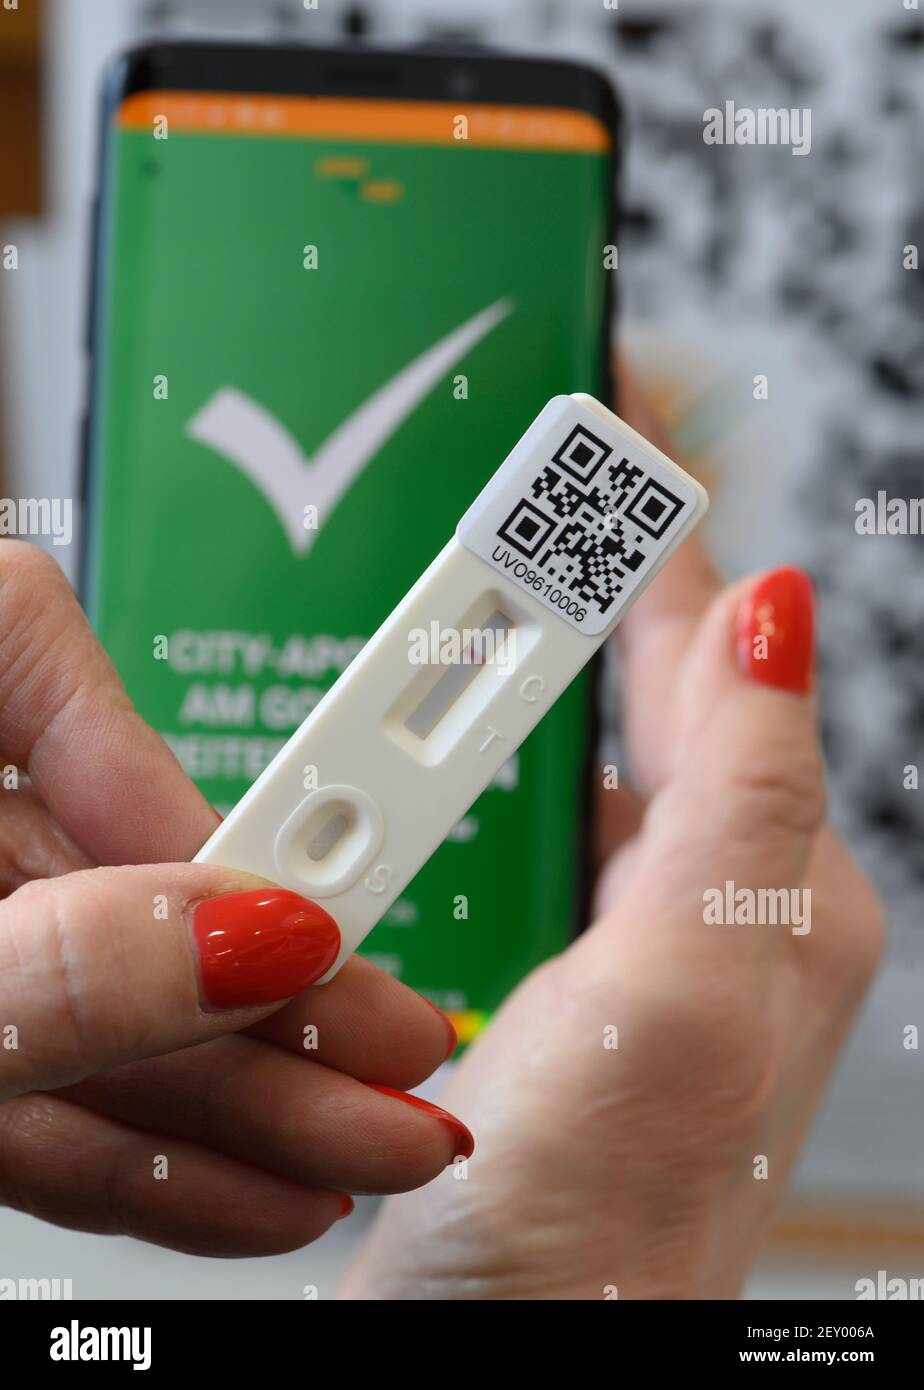 Dresda, Germania. 05 marzo 2021. Una donna ha una cassetta di test rapido  Covid-19 con il risultato negativo nelle sue mani in farmacia, sullo sfondo  l'app della startup sassone 'pass4all' può essere